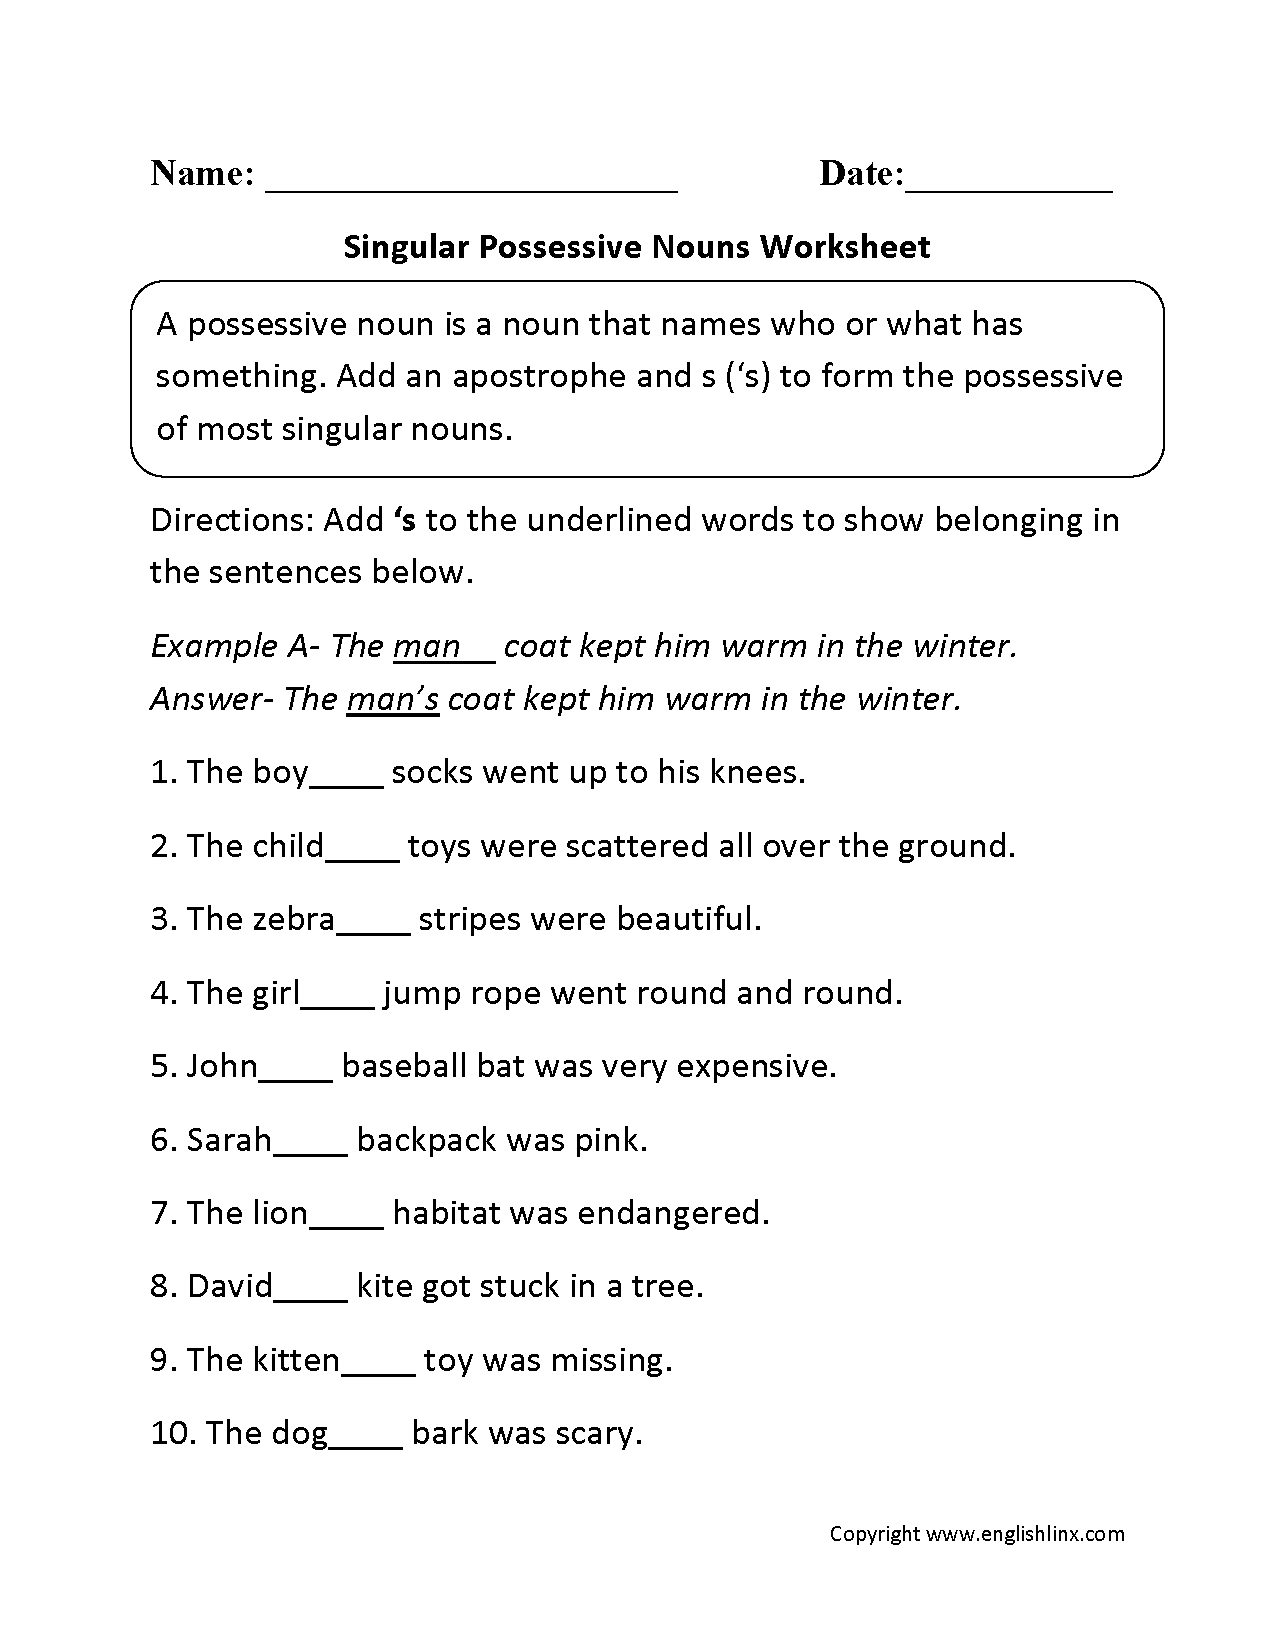 possessive-nouns-worksheets-singular-possessive-nouns-worksheets